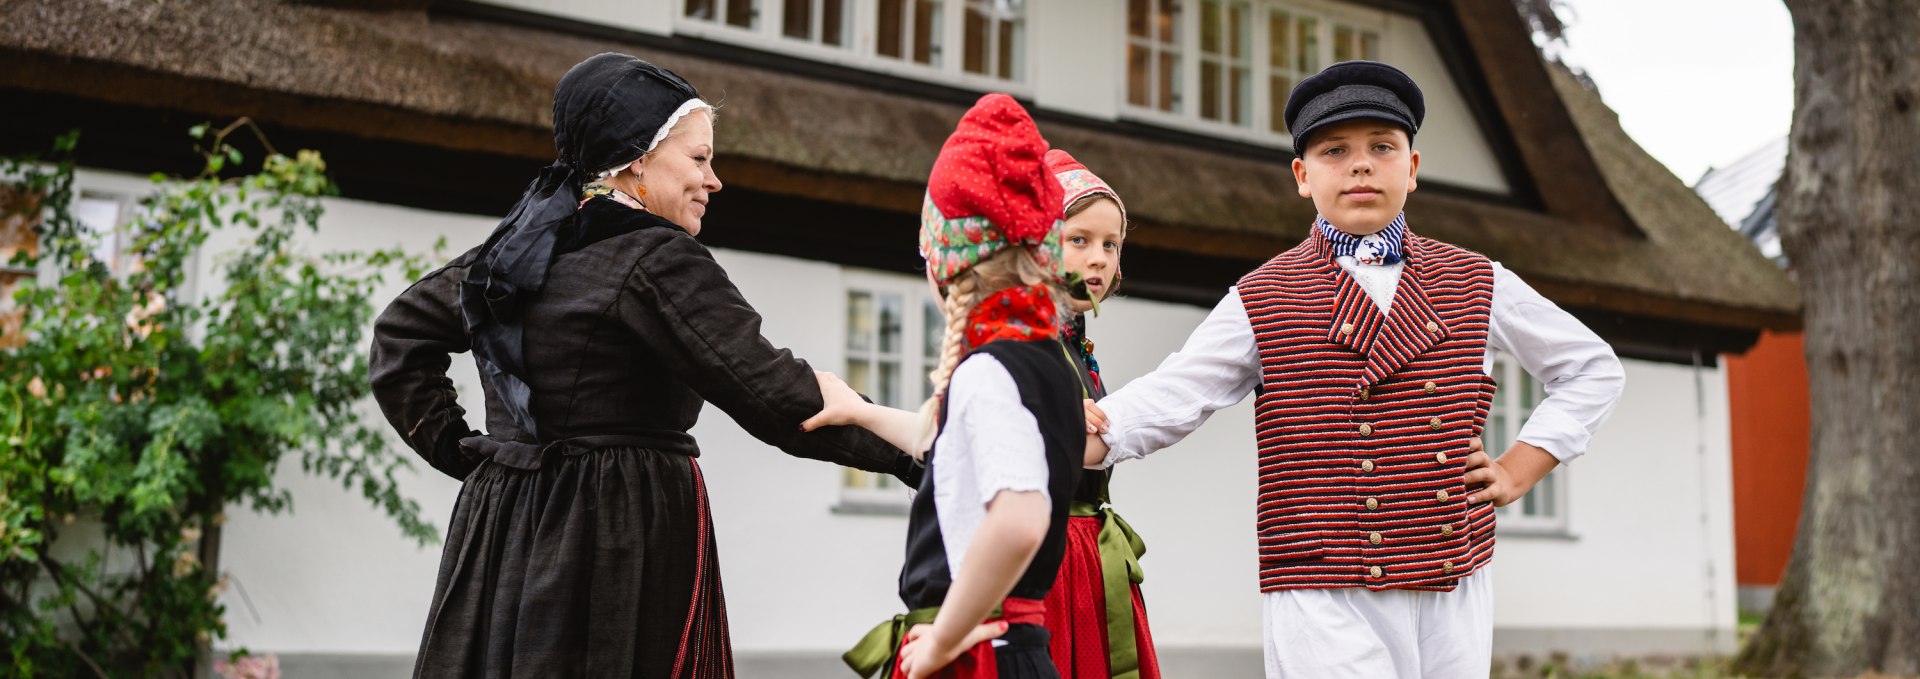 Ina Stöckmann (links) beim Tanz mit einigen Jungen und Mädchen von der Kindertrachtengruppe in Göhren, © TMV/Gross